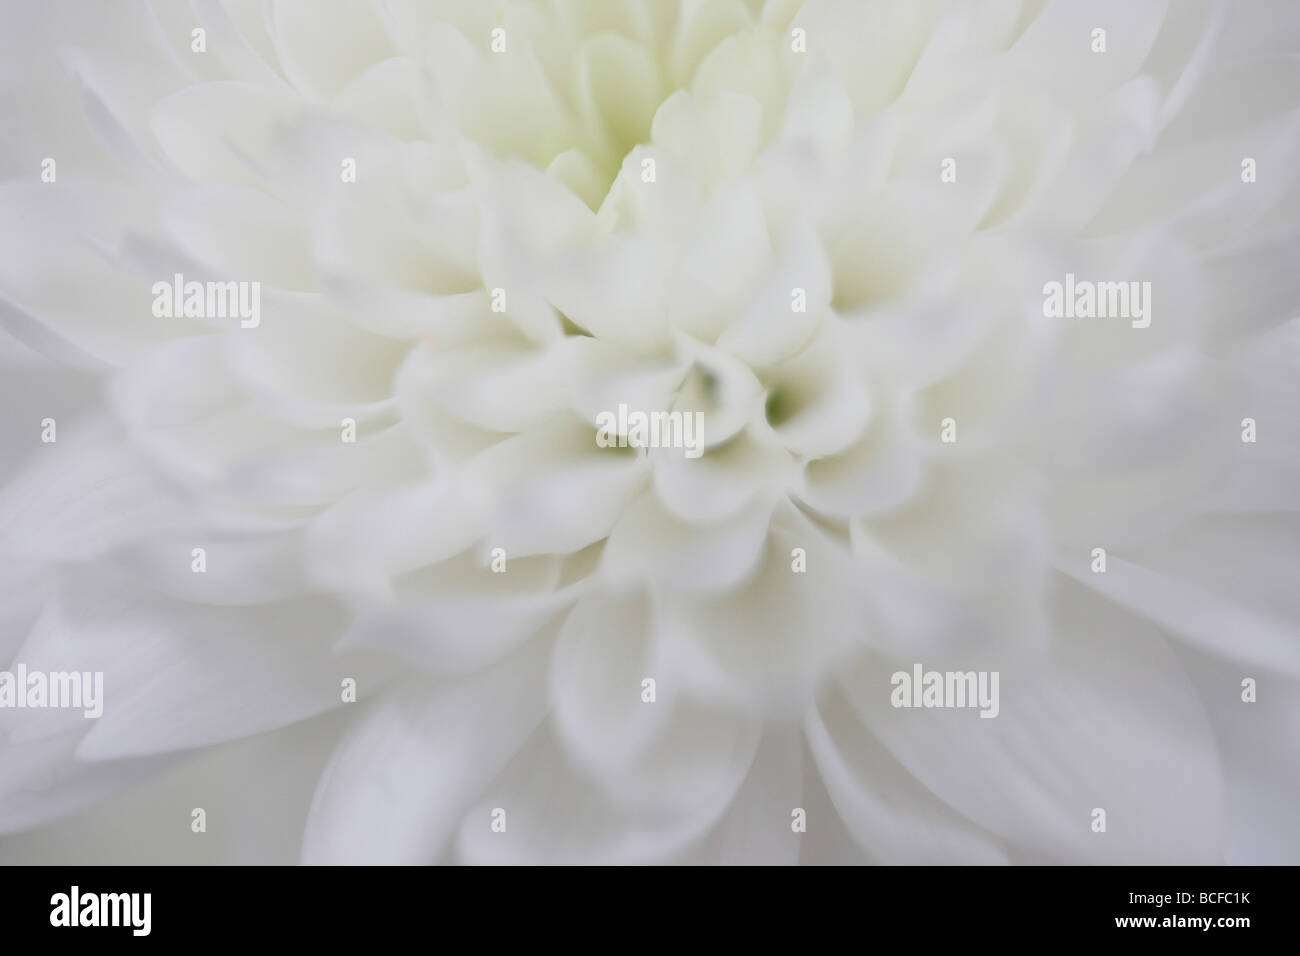 Telaio di completa chiusura del bianco crisantemo petalled arte fotografia Jane Ann Butler JABP Fotografia427 Foto Stock